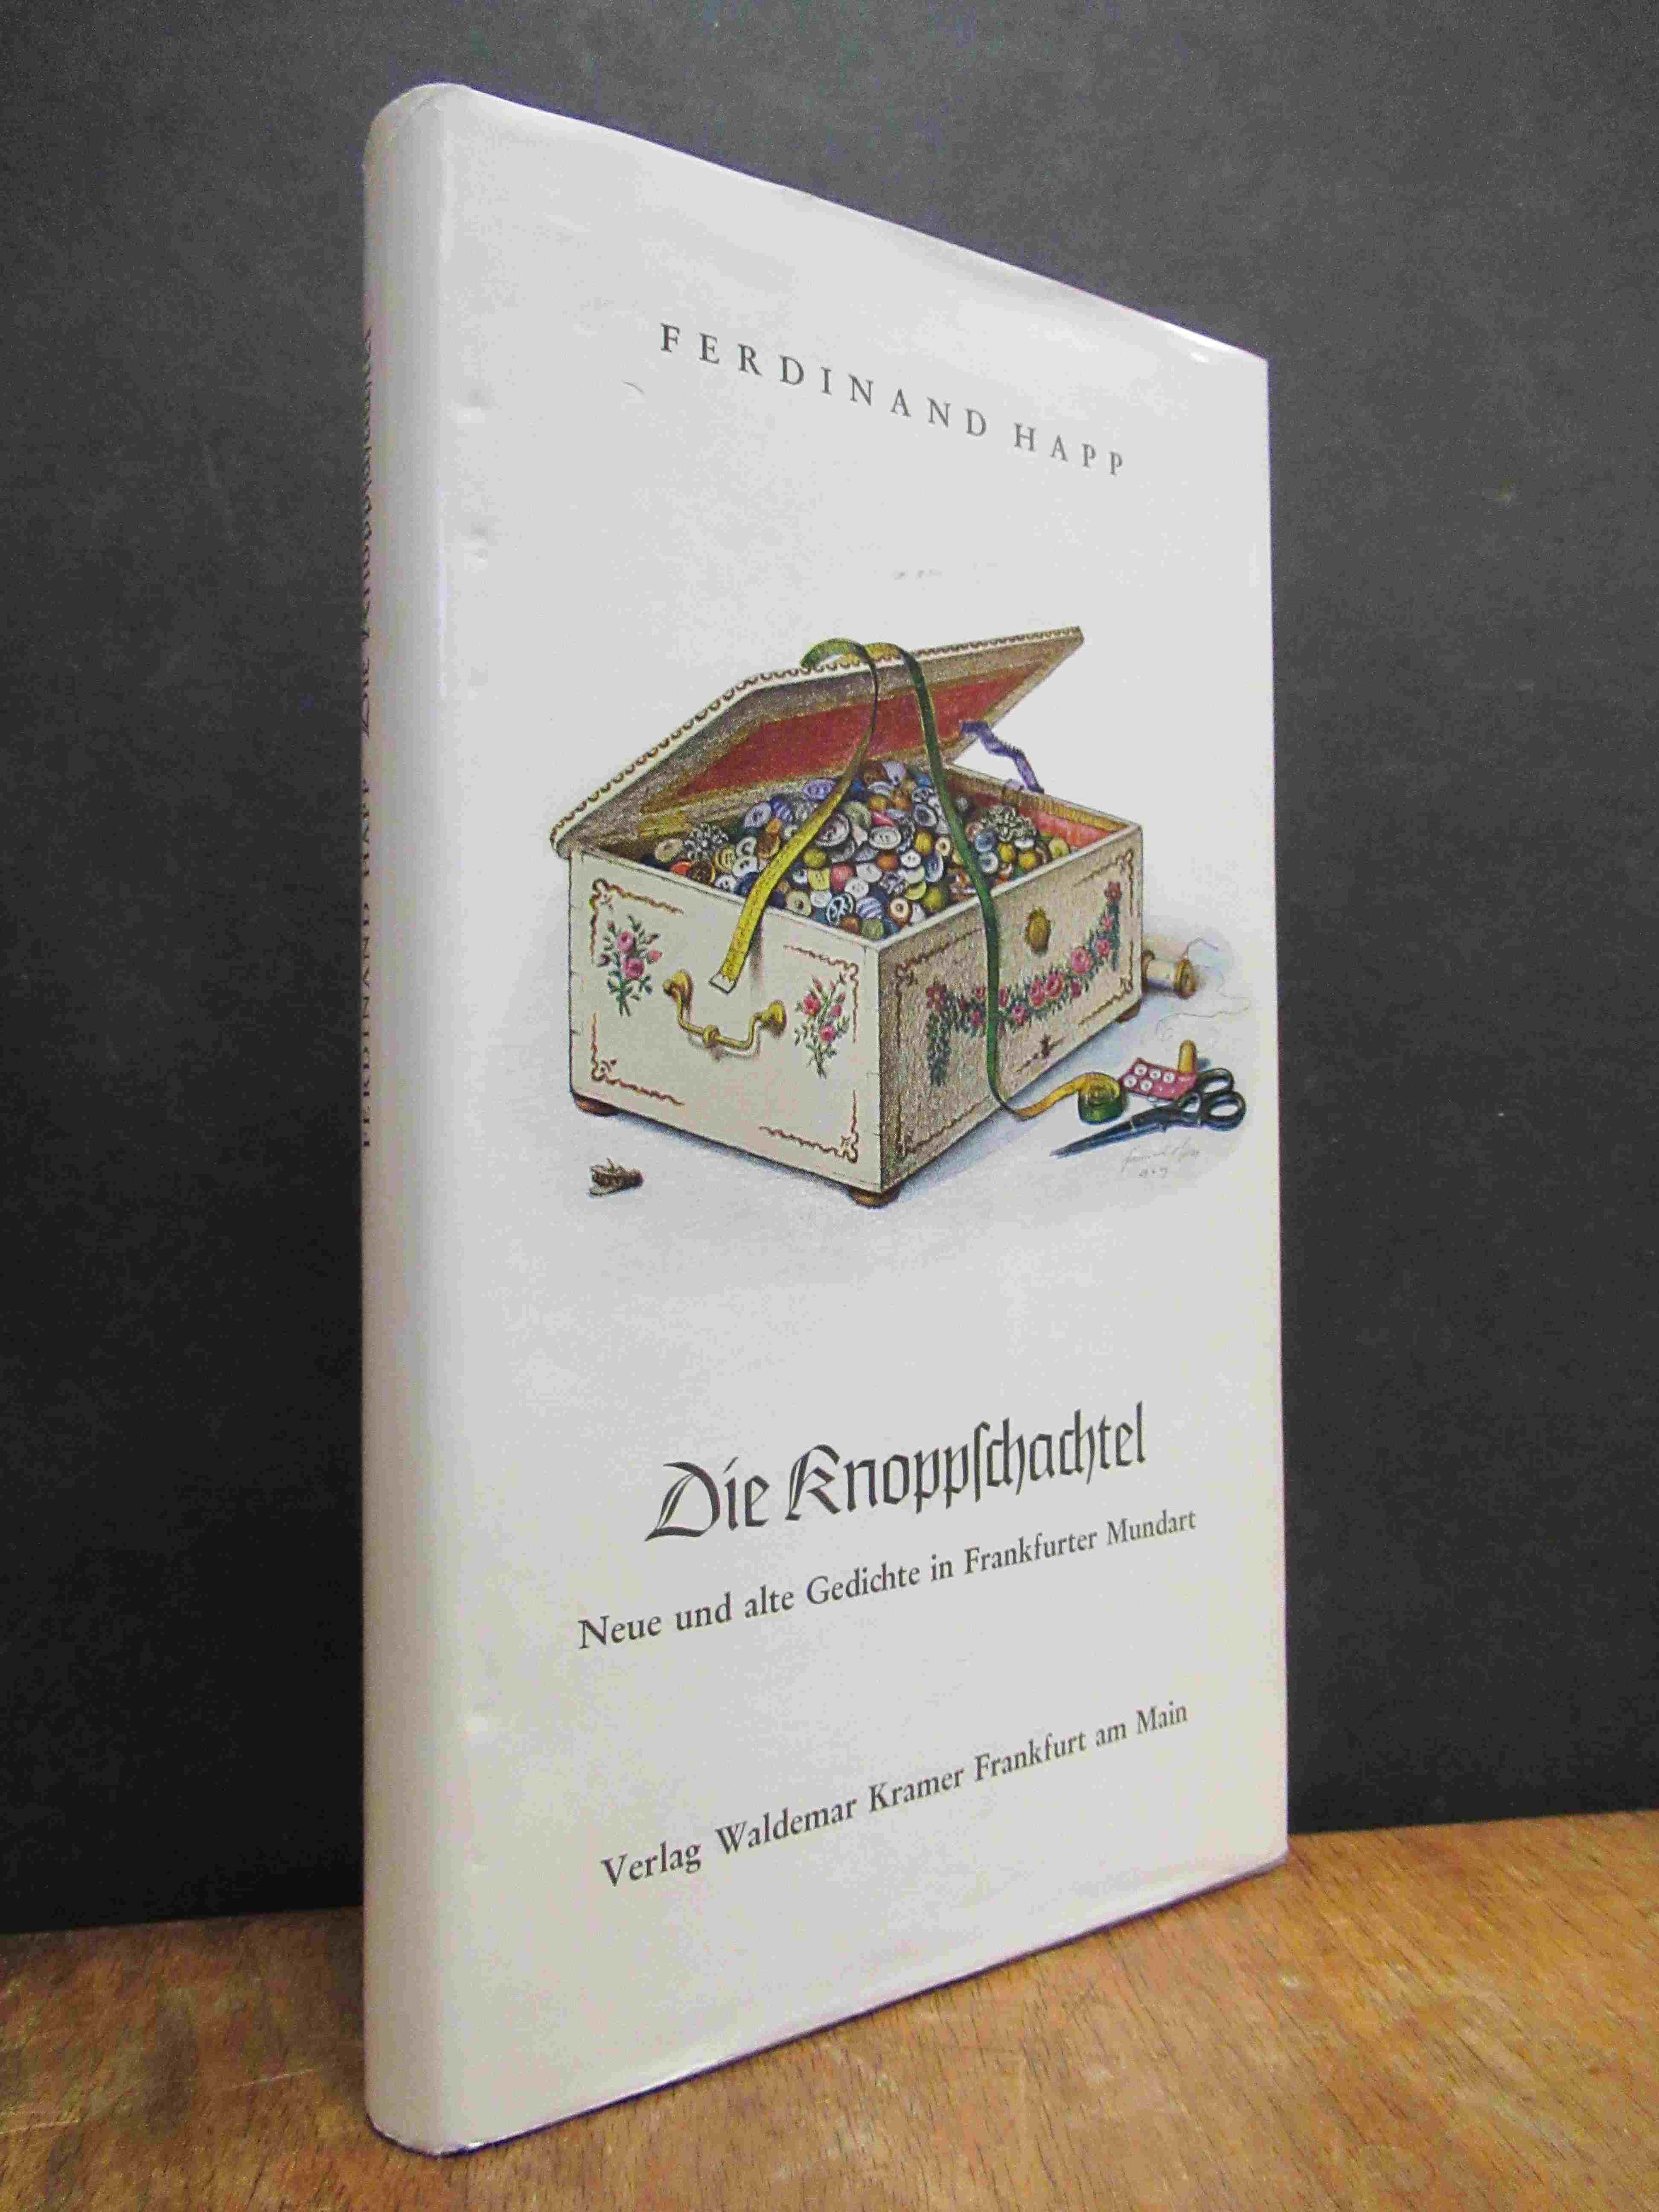 Happ, Die Knoppschachtel – Neue und alte Gedichte in Frankfurter Mundart,